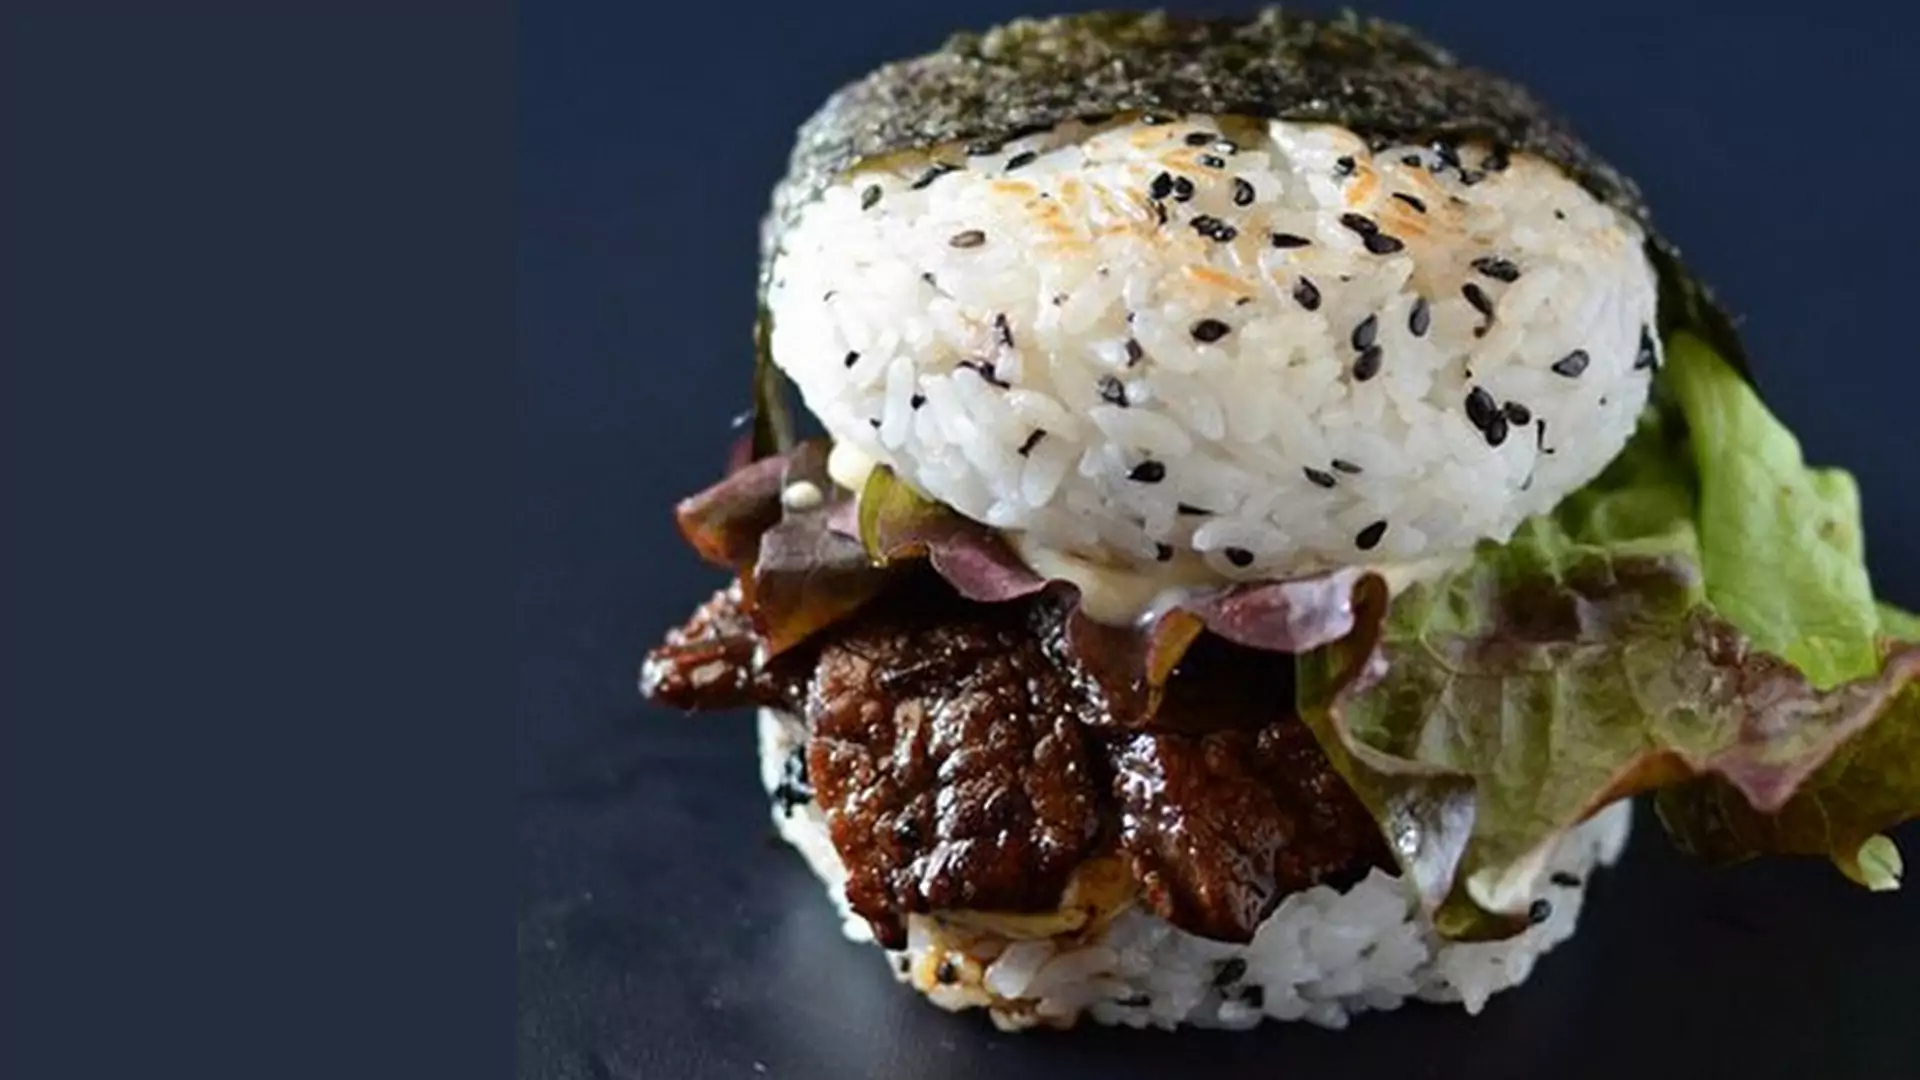 Sushi-burger, czyli prawdopodobnie najbardziej zaskakujący, kulinarny wynalazek ostatnich lat